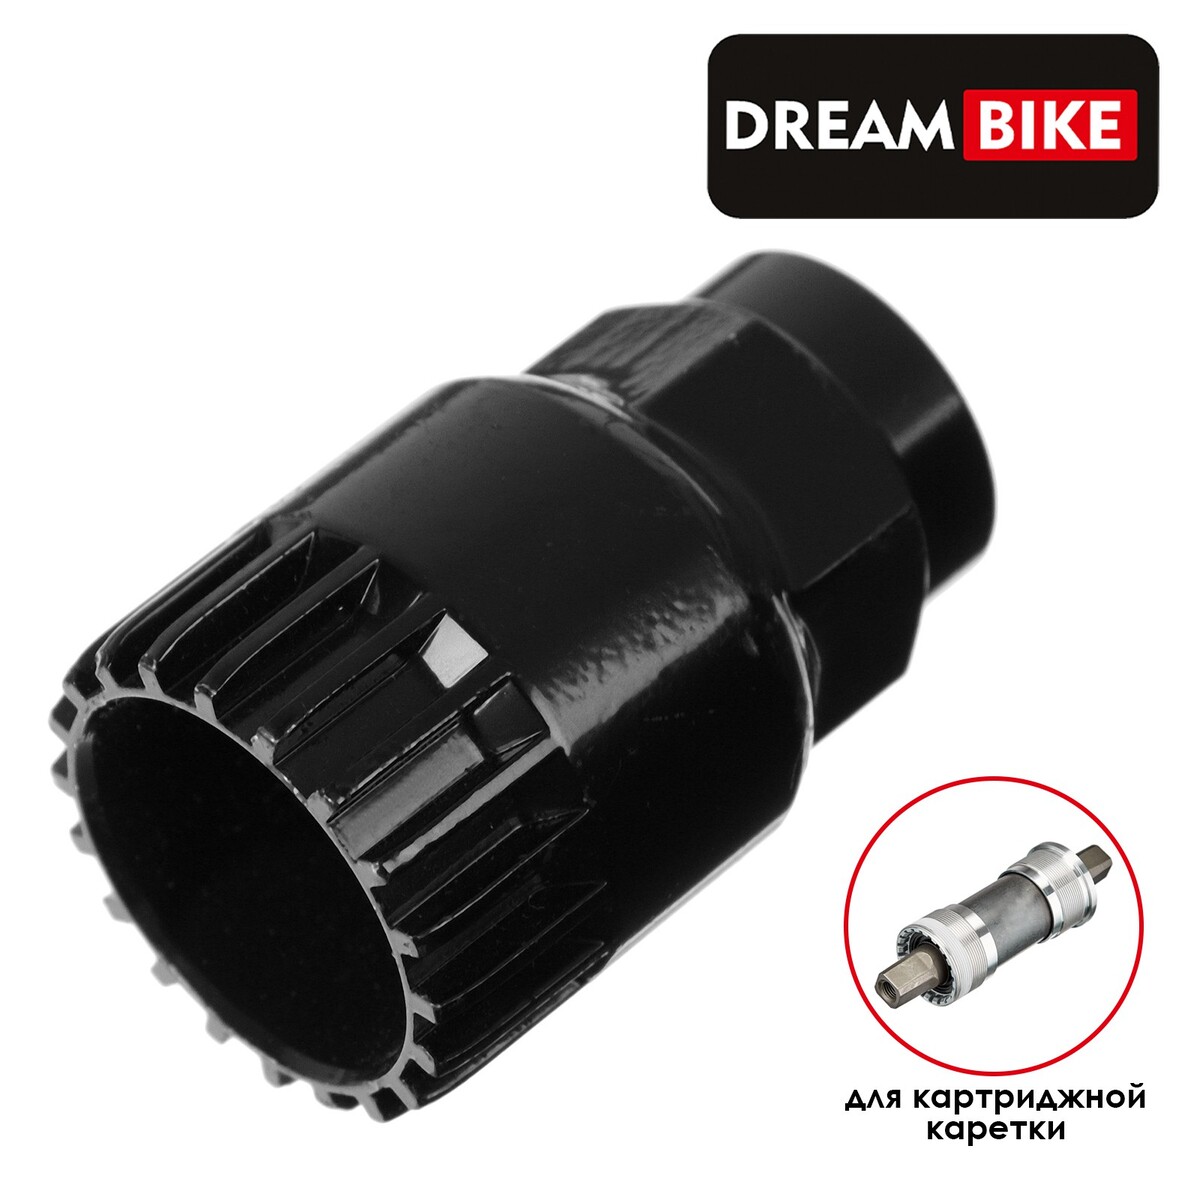 Съемник каретки dream bike gj-022-1 съемник каретки bbb bracketplug серый btl 105d